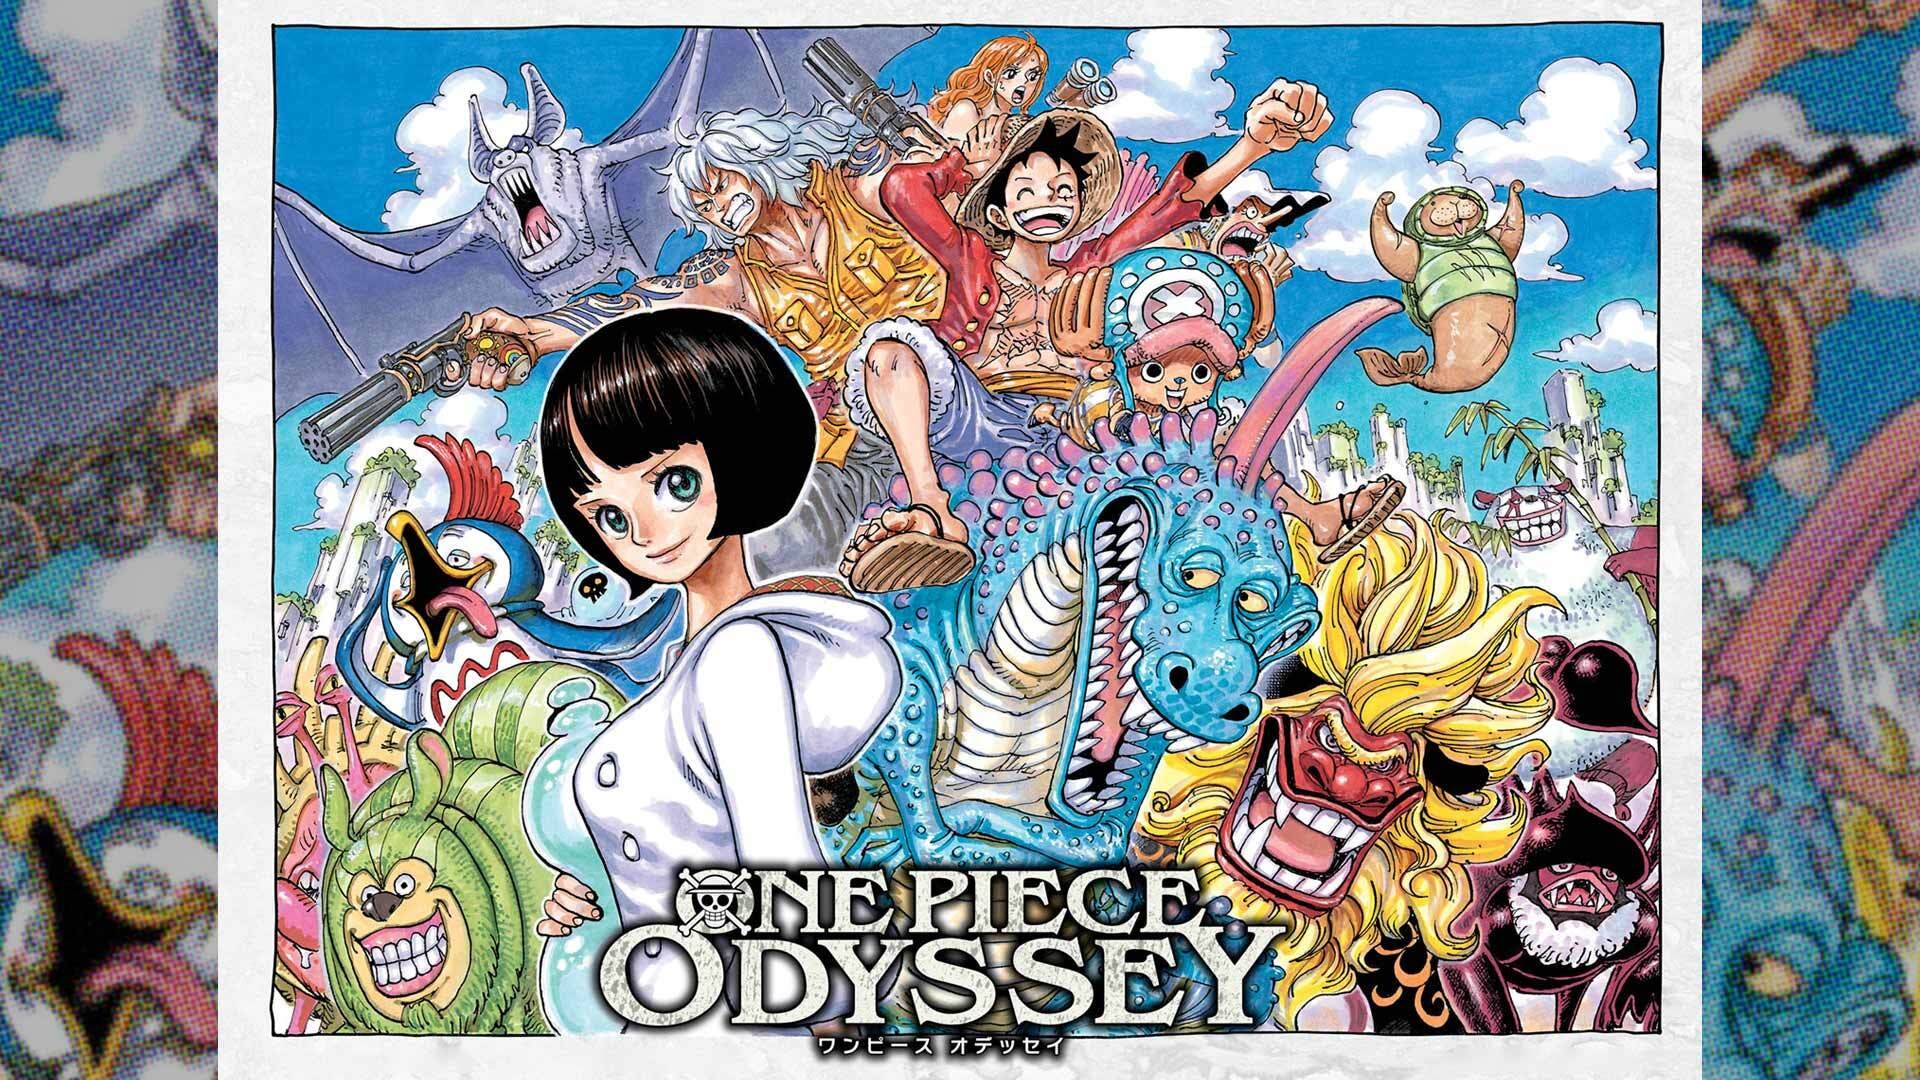  One Piece Odyssey - Standard Edition - Xbox Series X